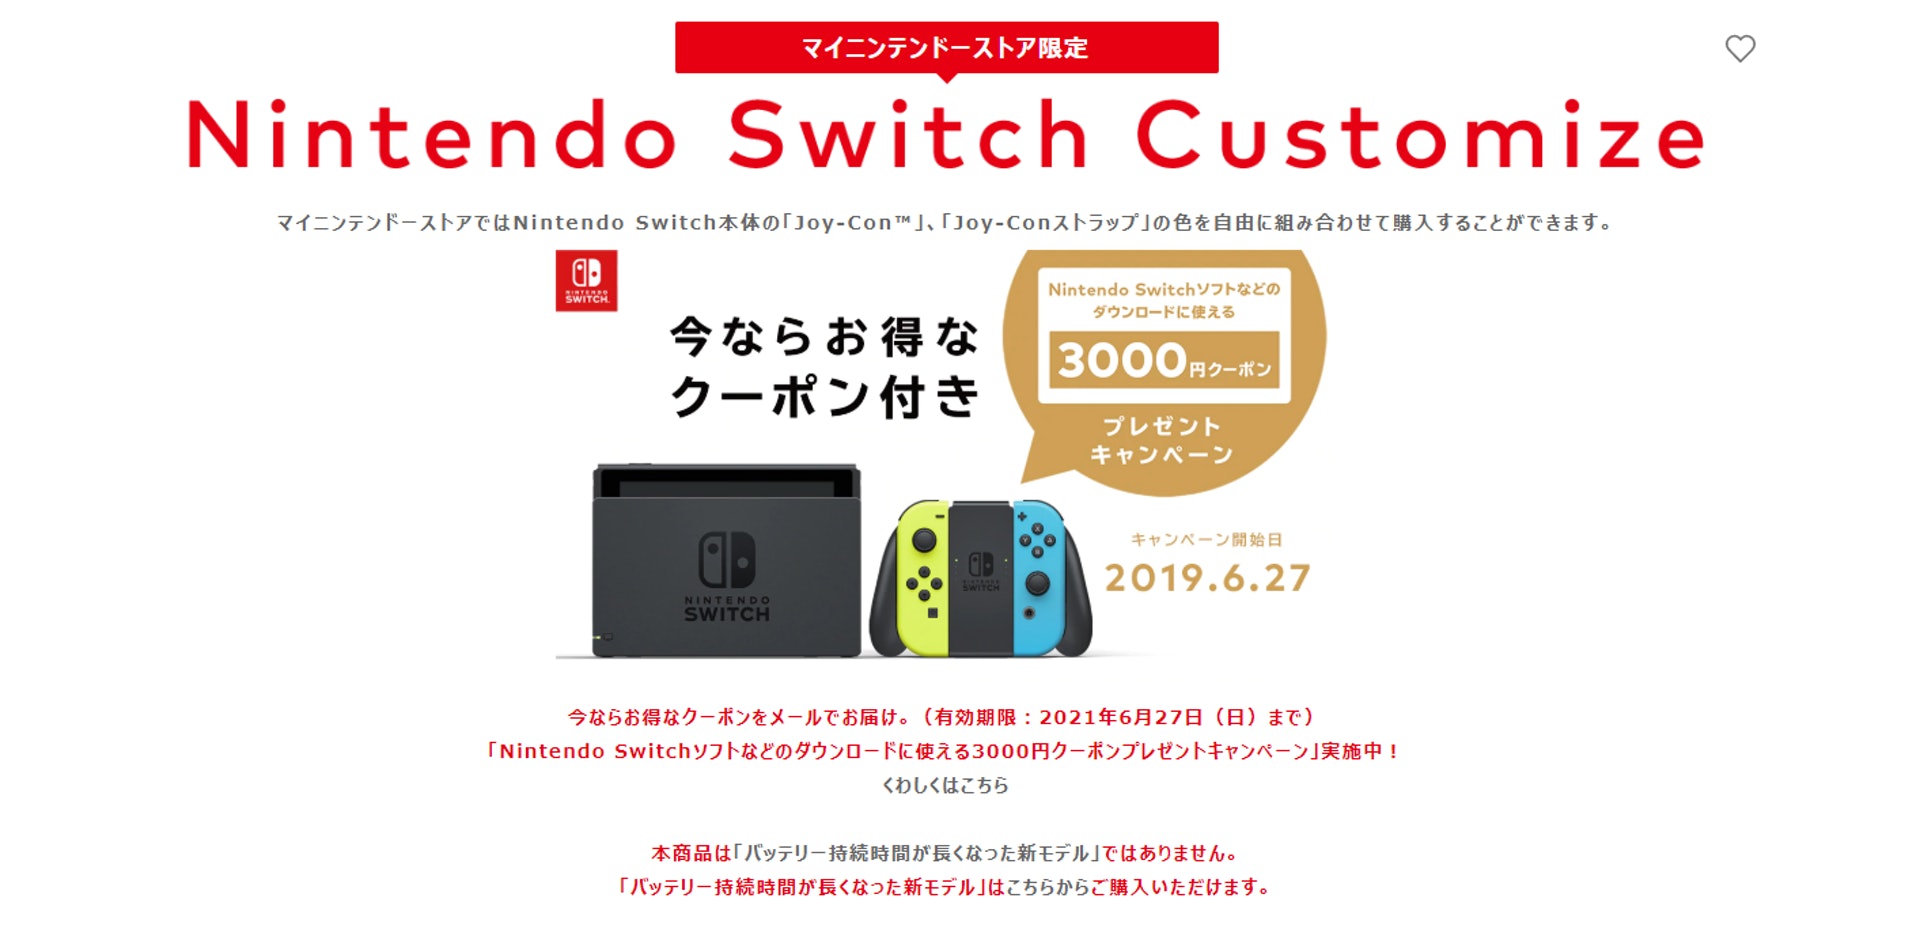 「Nintendo Switch Customize」售價為 32,978円（Nintendo 官網截圖）